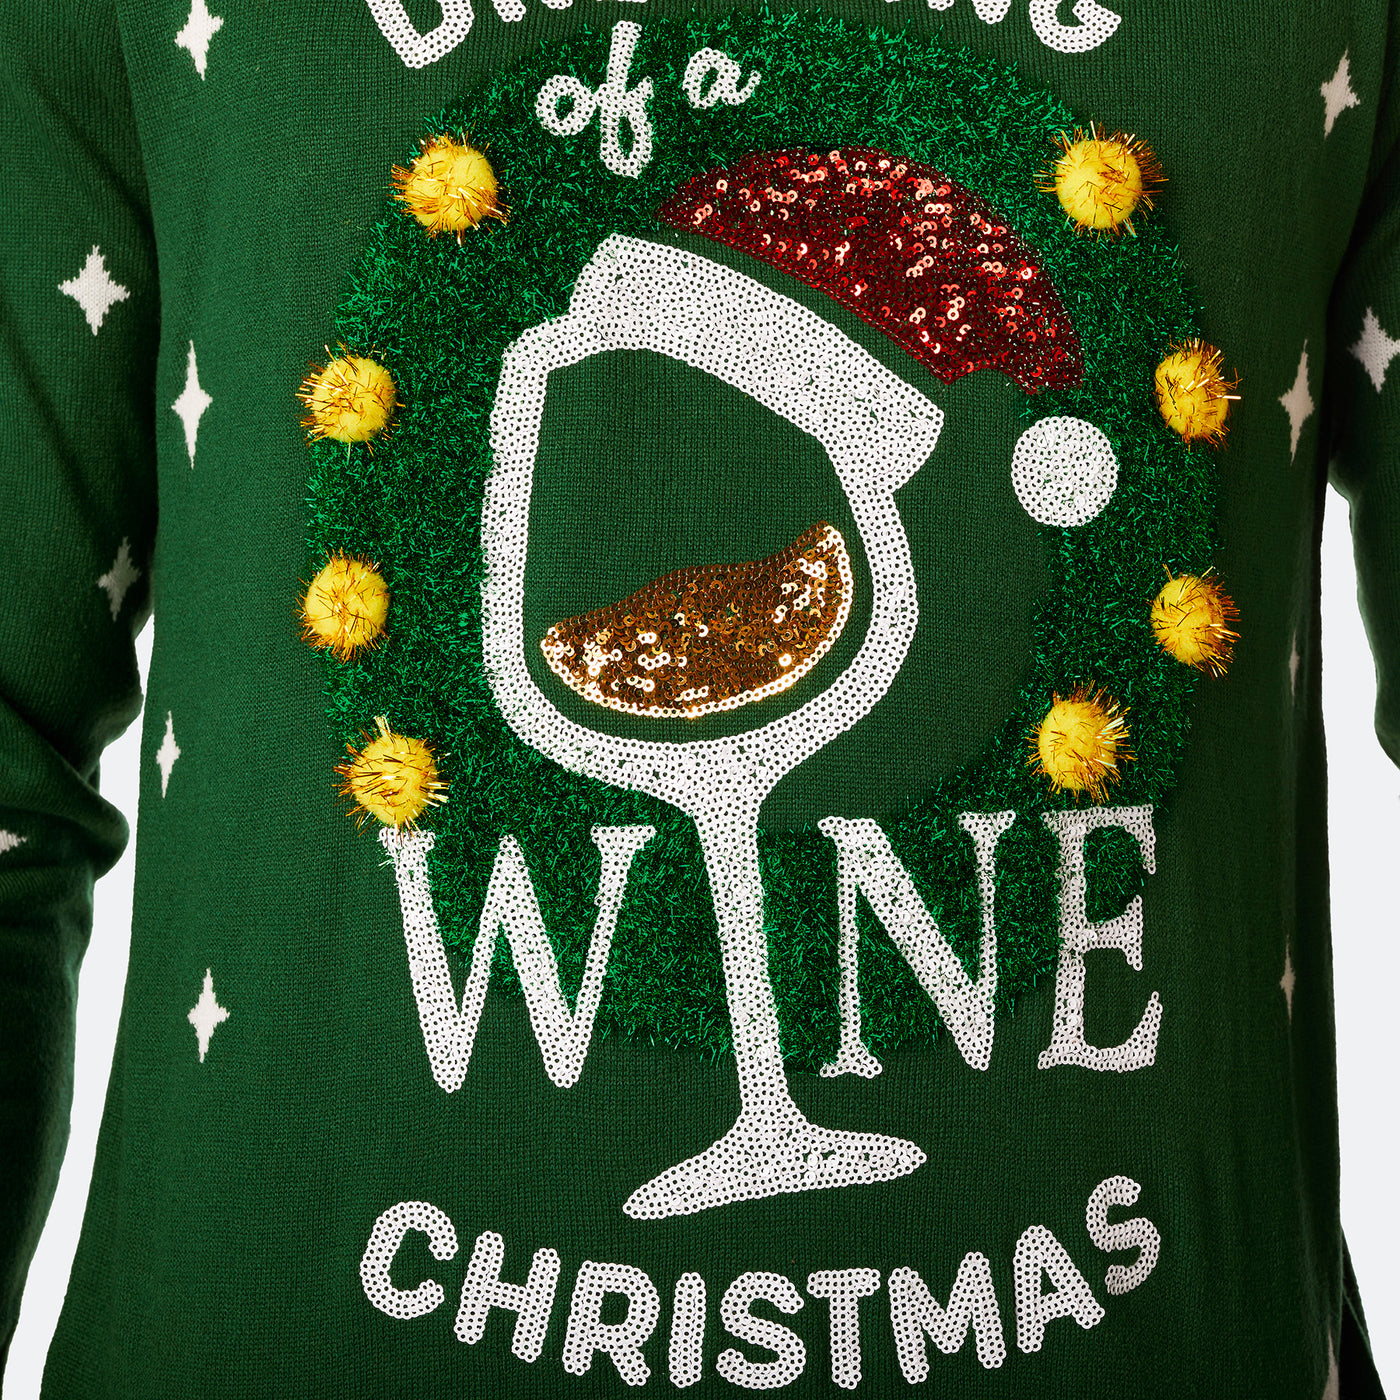 Women's Wine Christmas Sweater